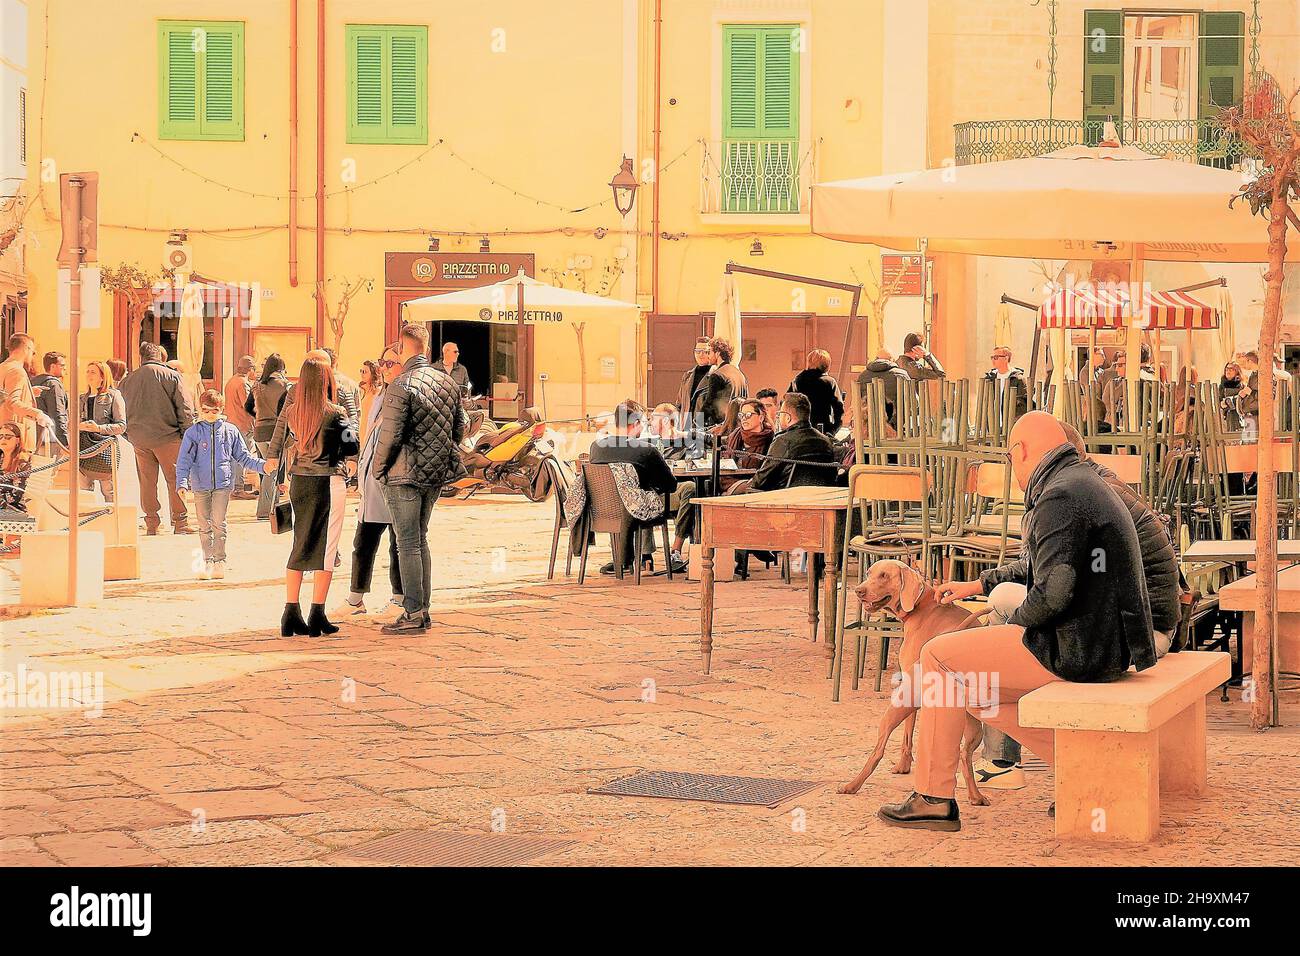 Monopoli,Italia,0310/2019: Multitud de personas un domingo soleado, en la plaza de la ciudad de Monopoli, Apulia, hizo relación social. Foto de stock